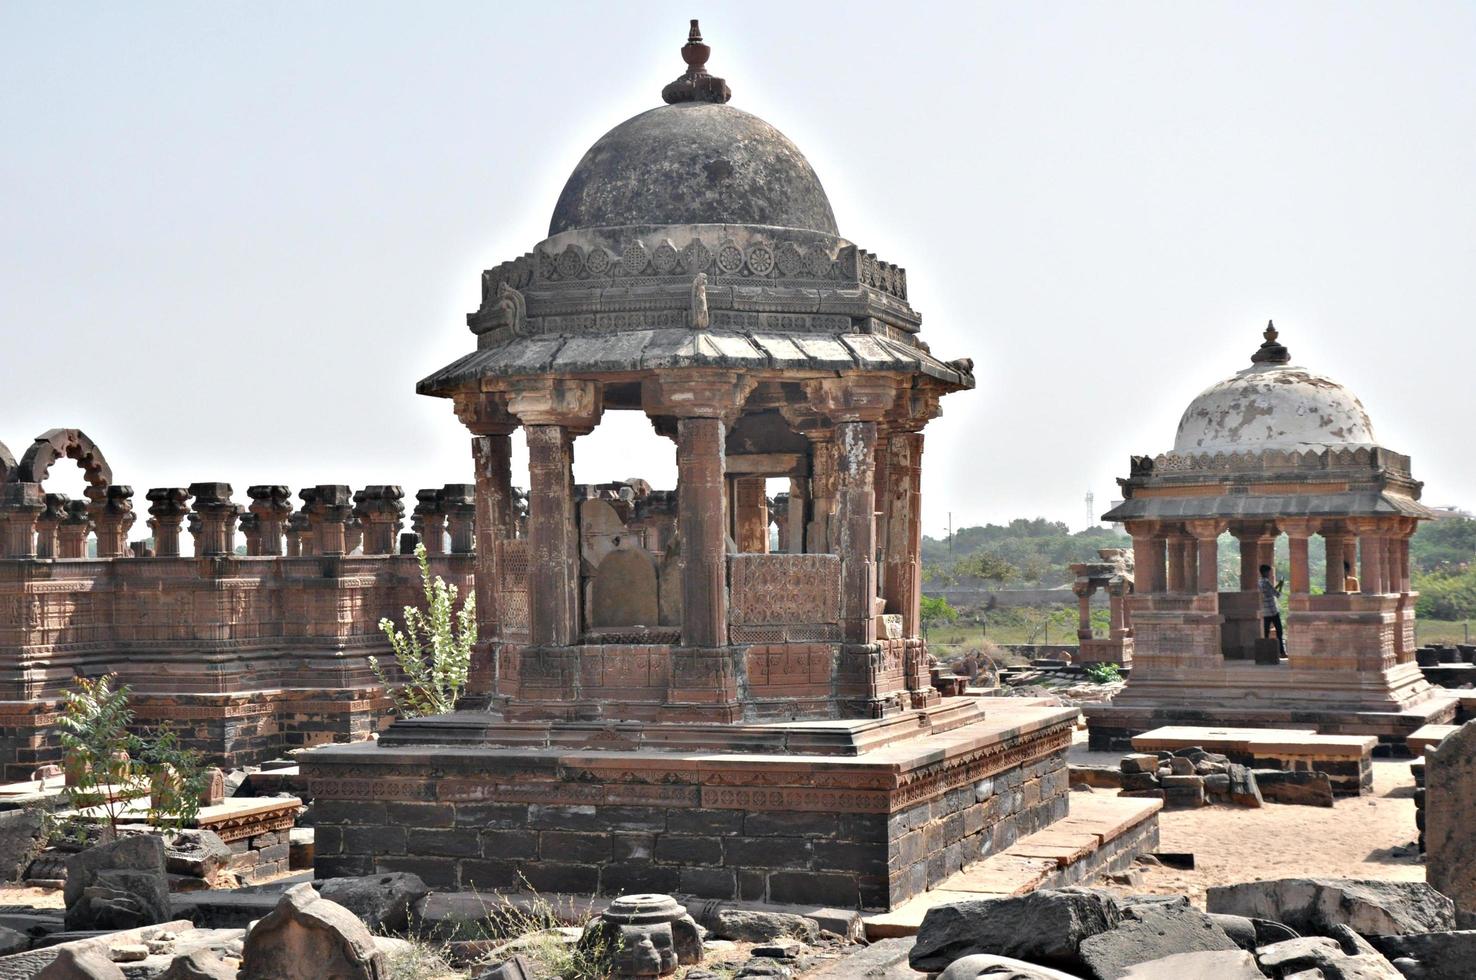 arquitetura indiana antiga. arqueologia antiga antiga da ásia índia. foto